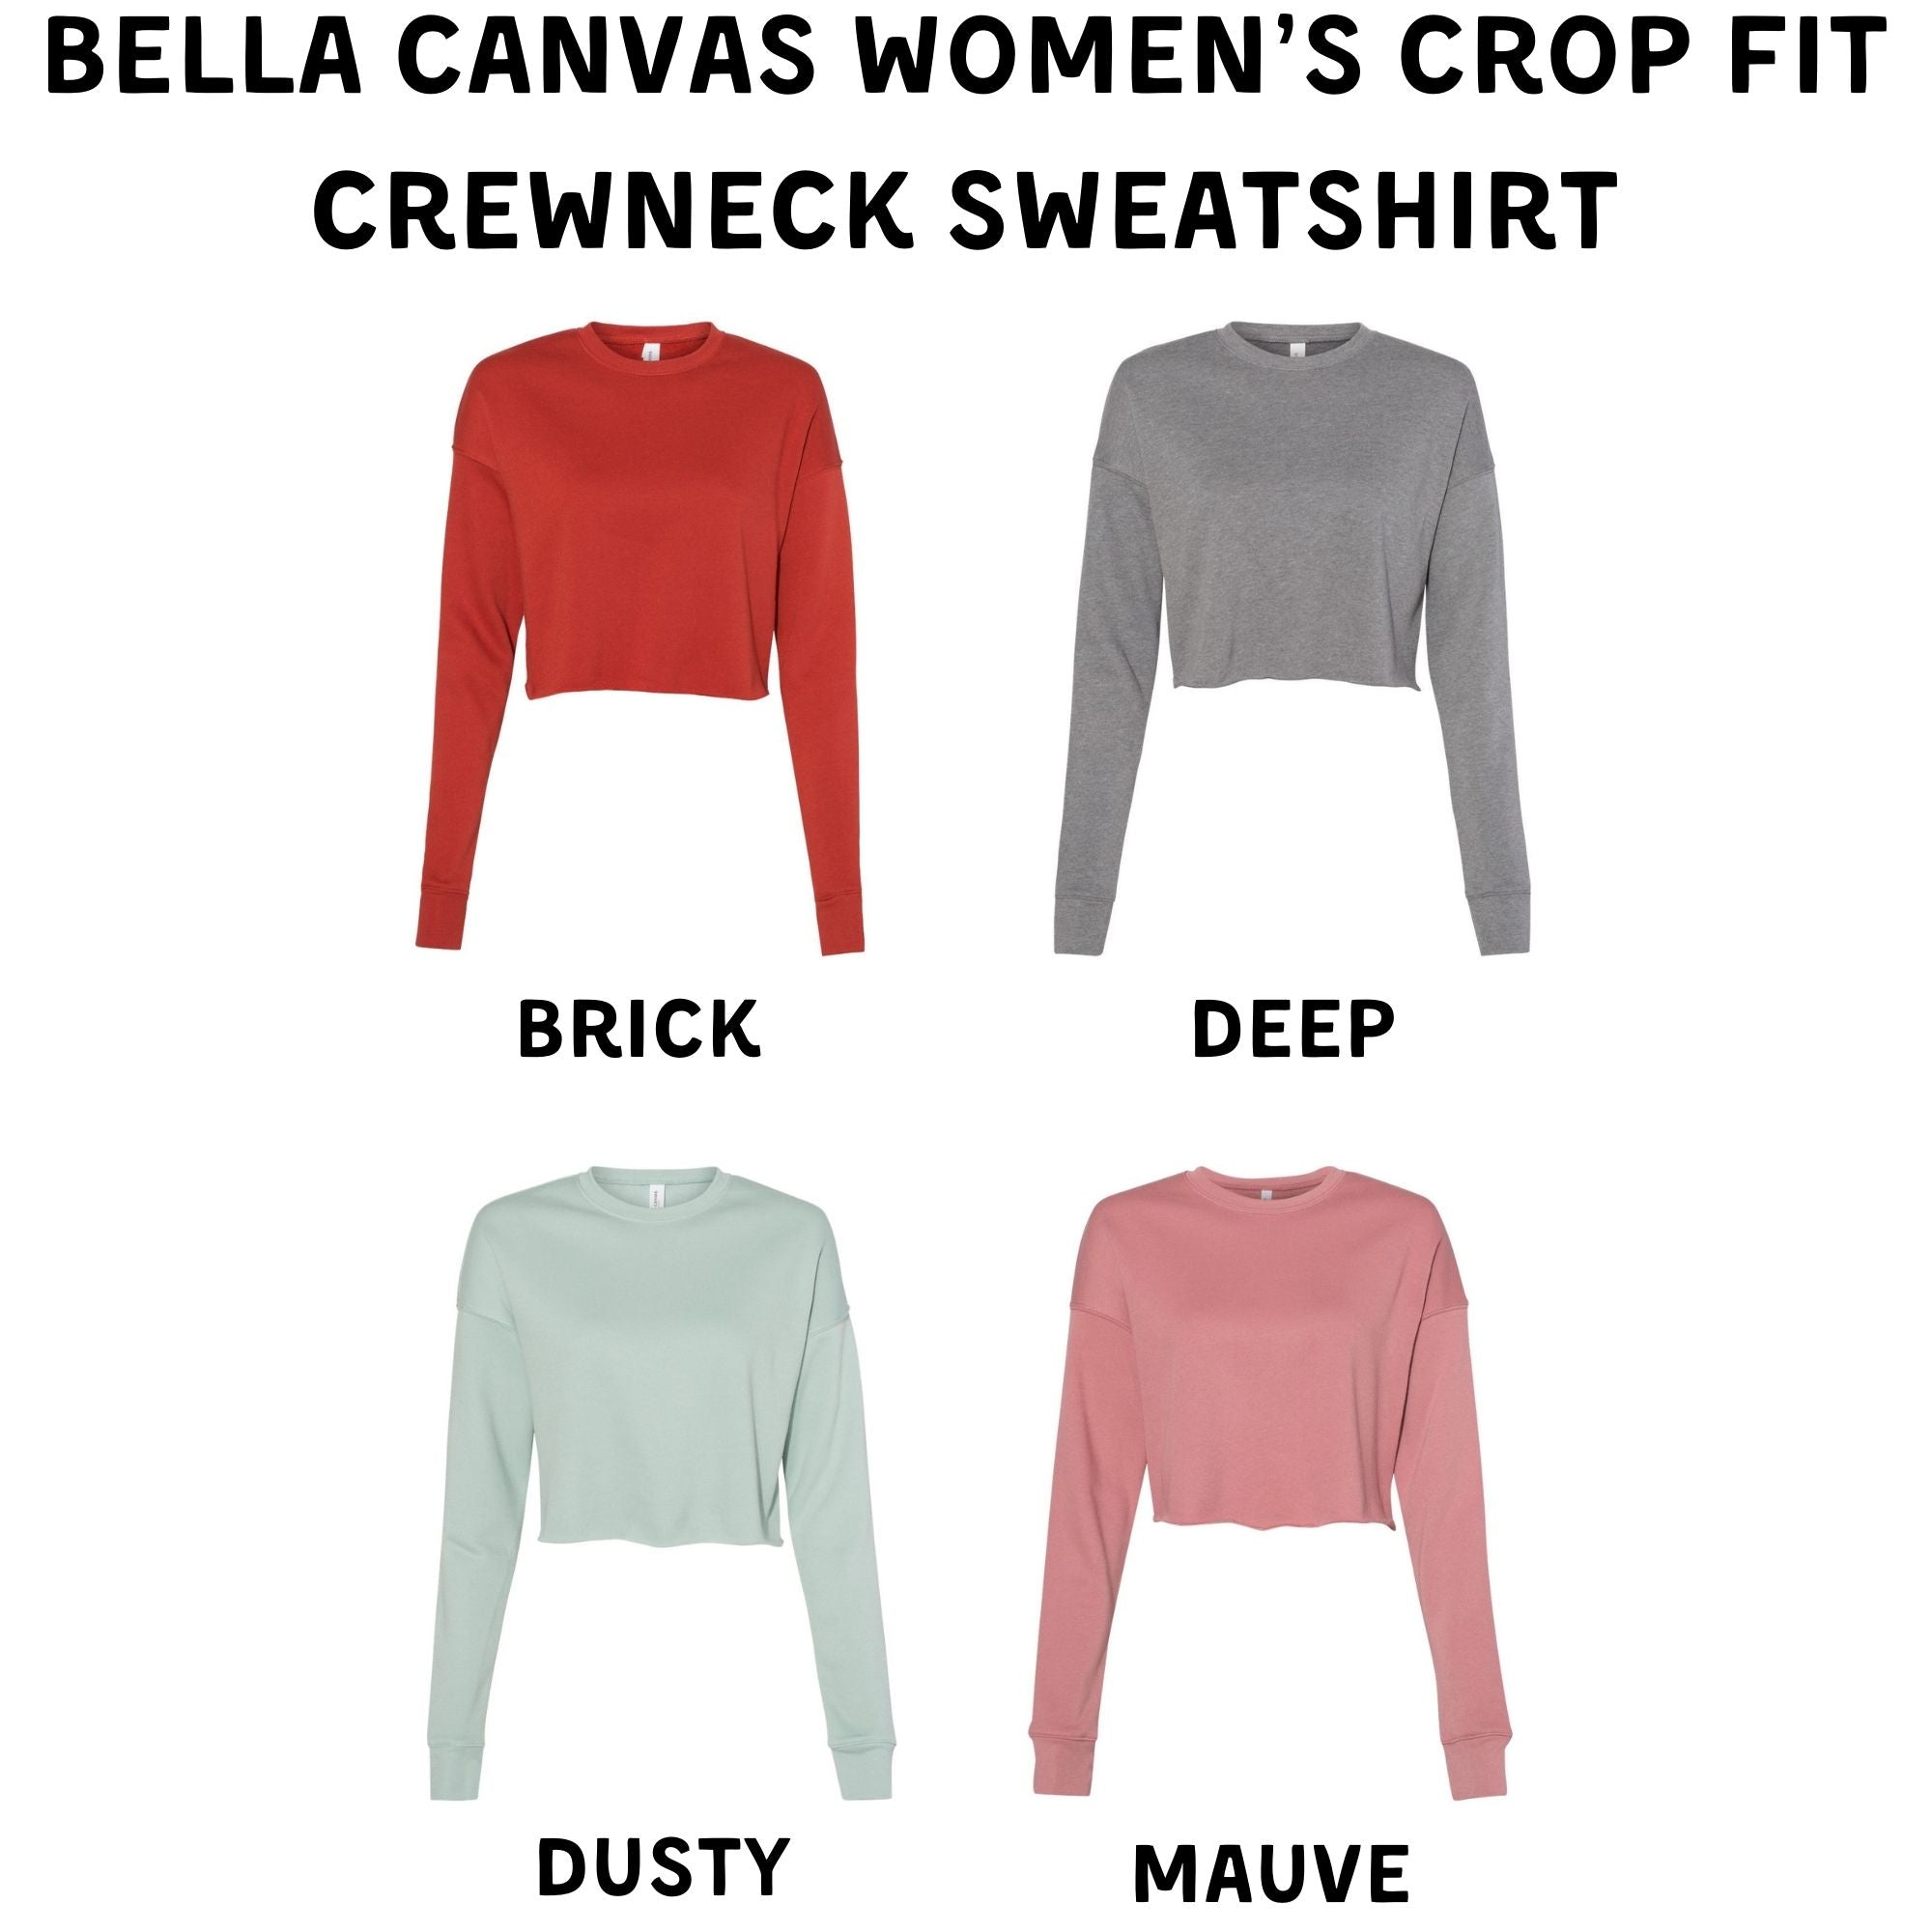 Not Today Pecker Cropped Sweatshirt or Crop Hoodie *Women's Crop Fit*-208 Tees Wholesale, Idaho